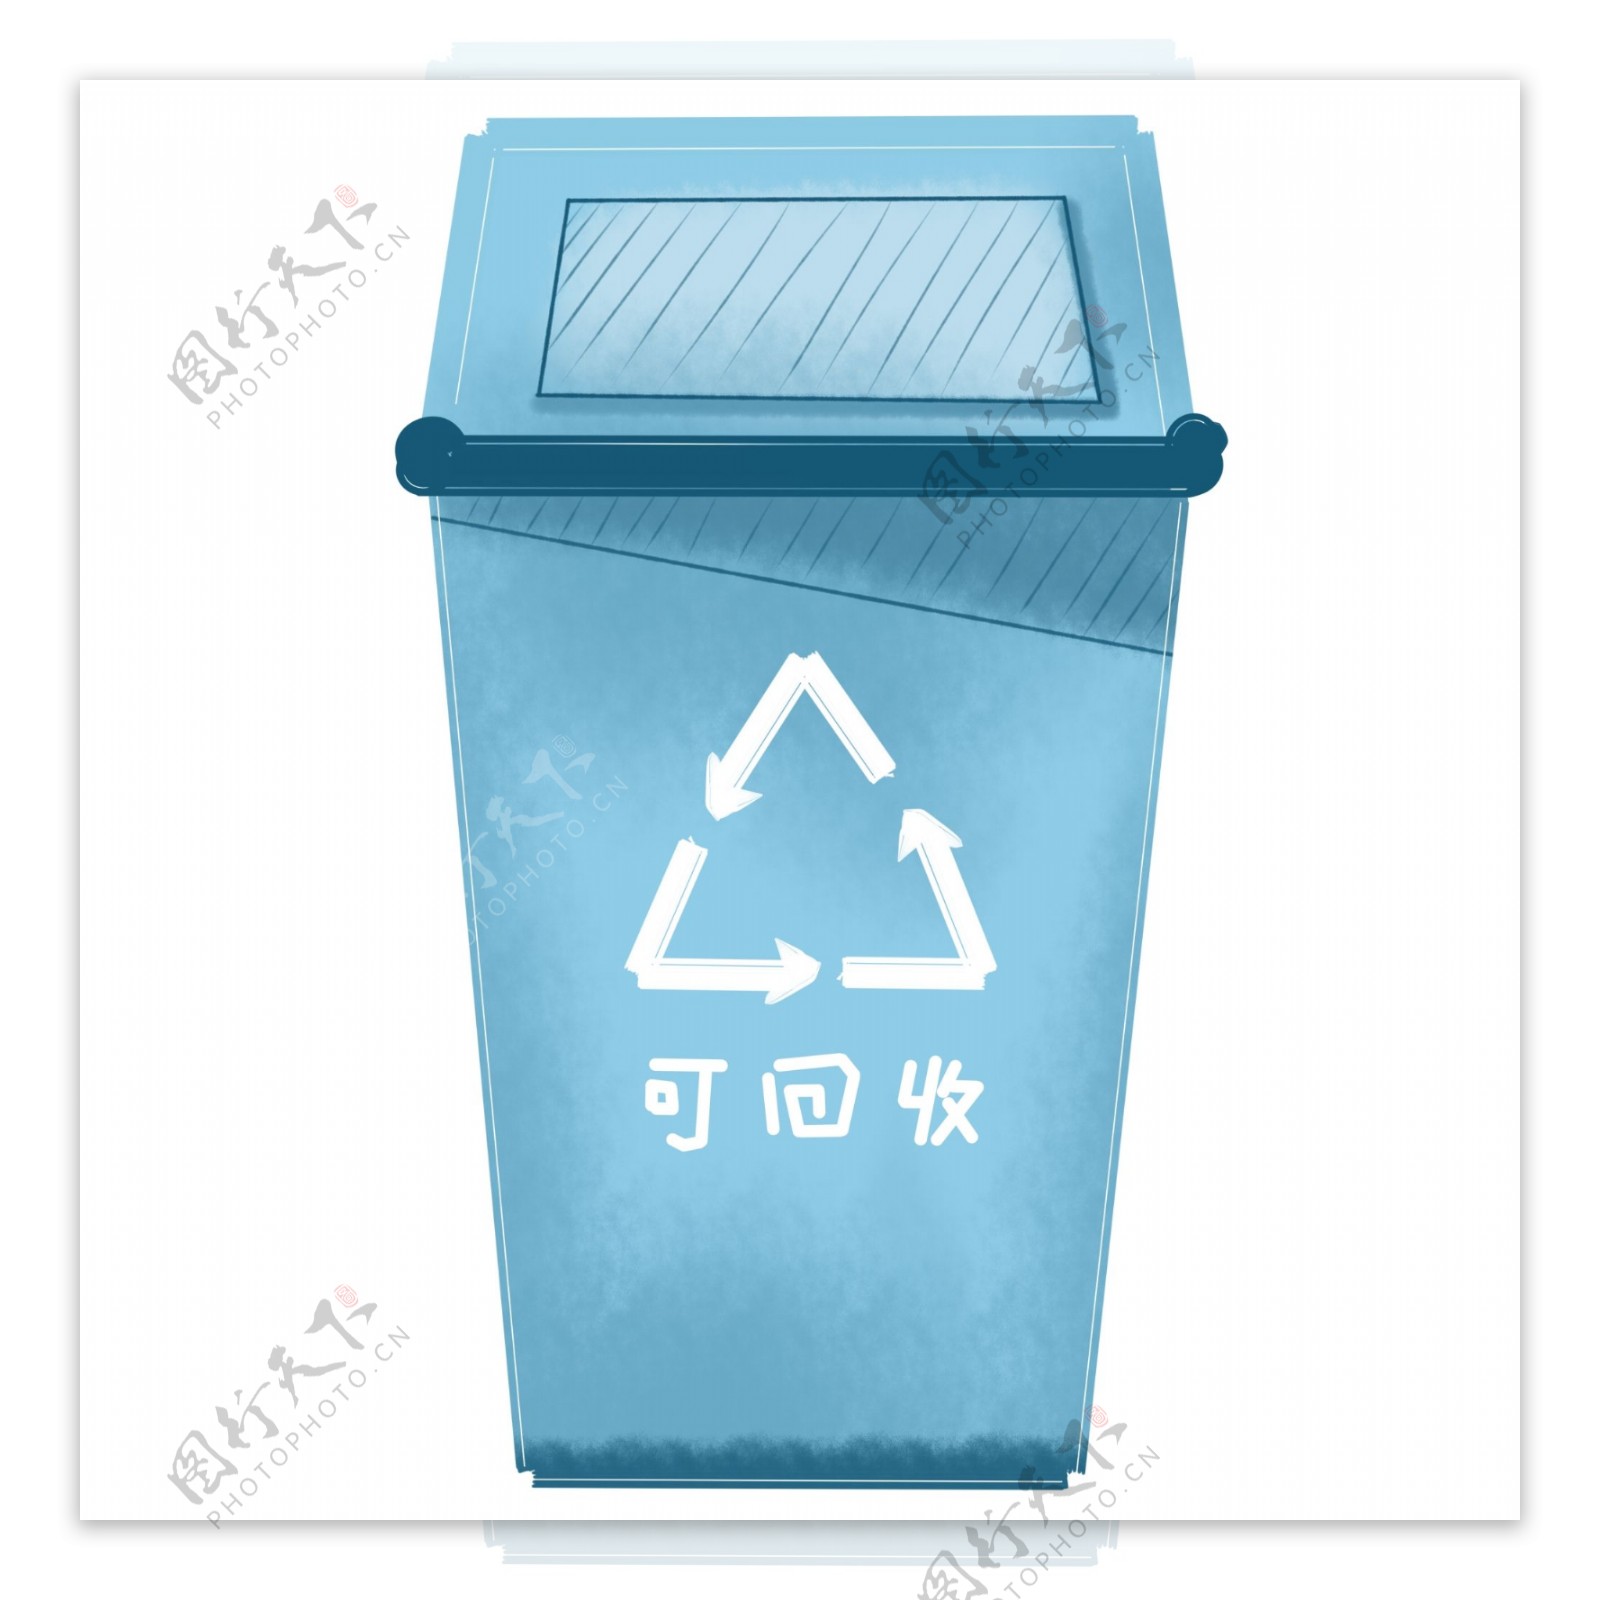 商用手绘环保可回收垃圾分类垃圾桶元素